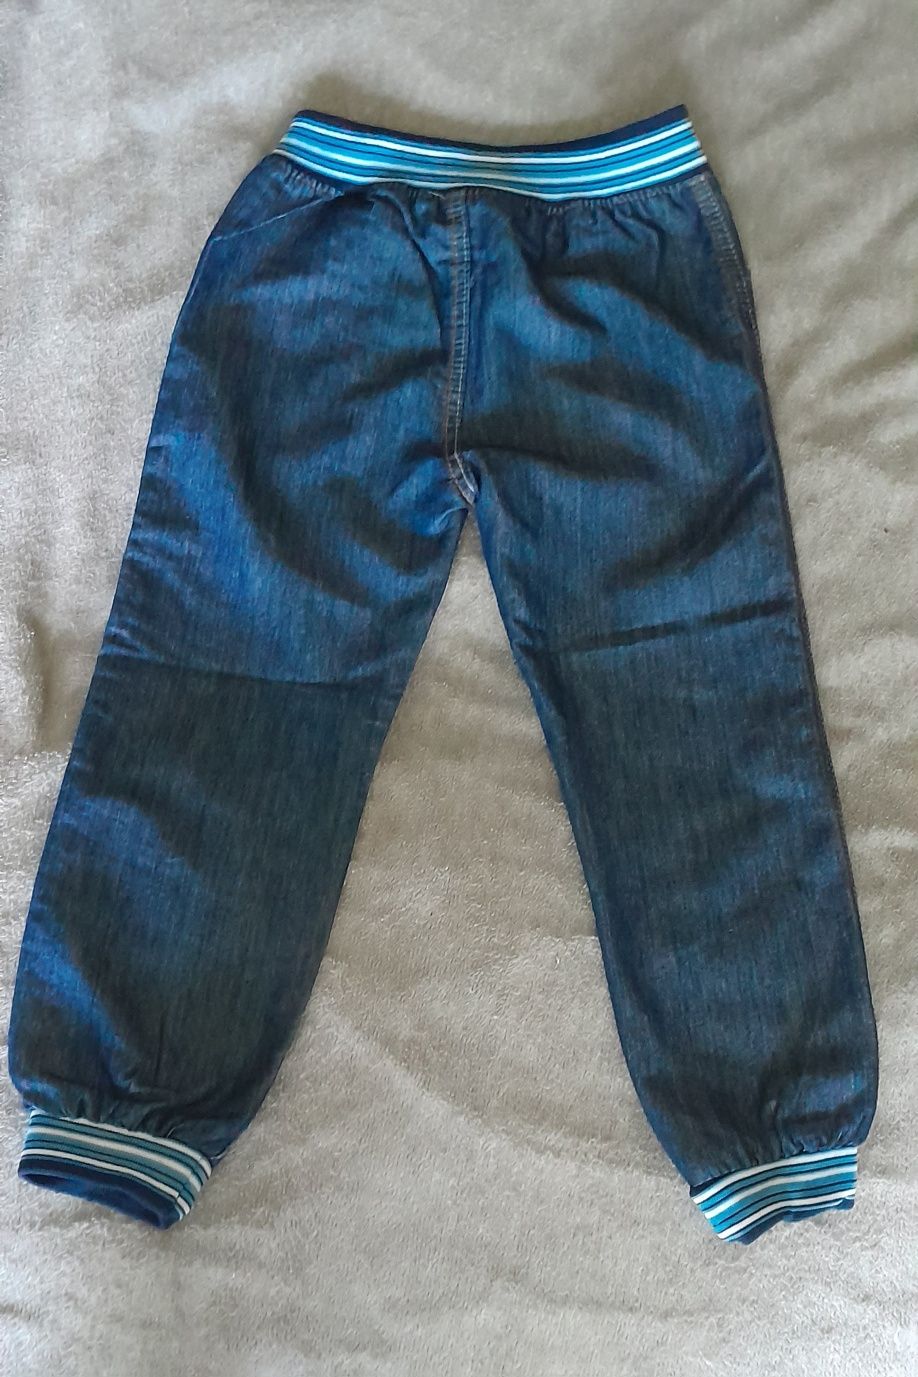 Тонкие джинсы джоггеры рост 122 6 лет